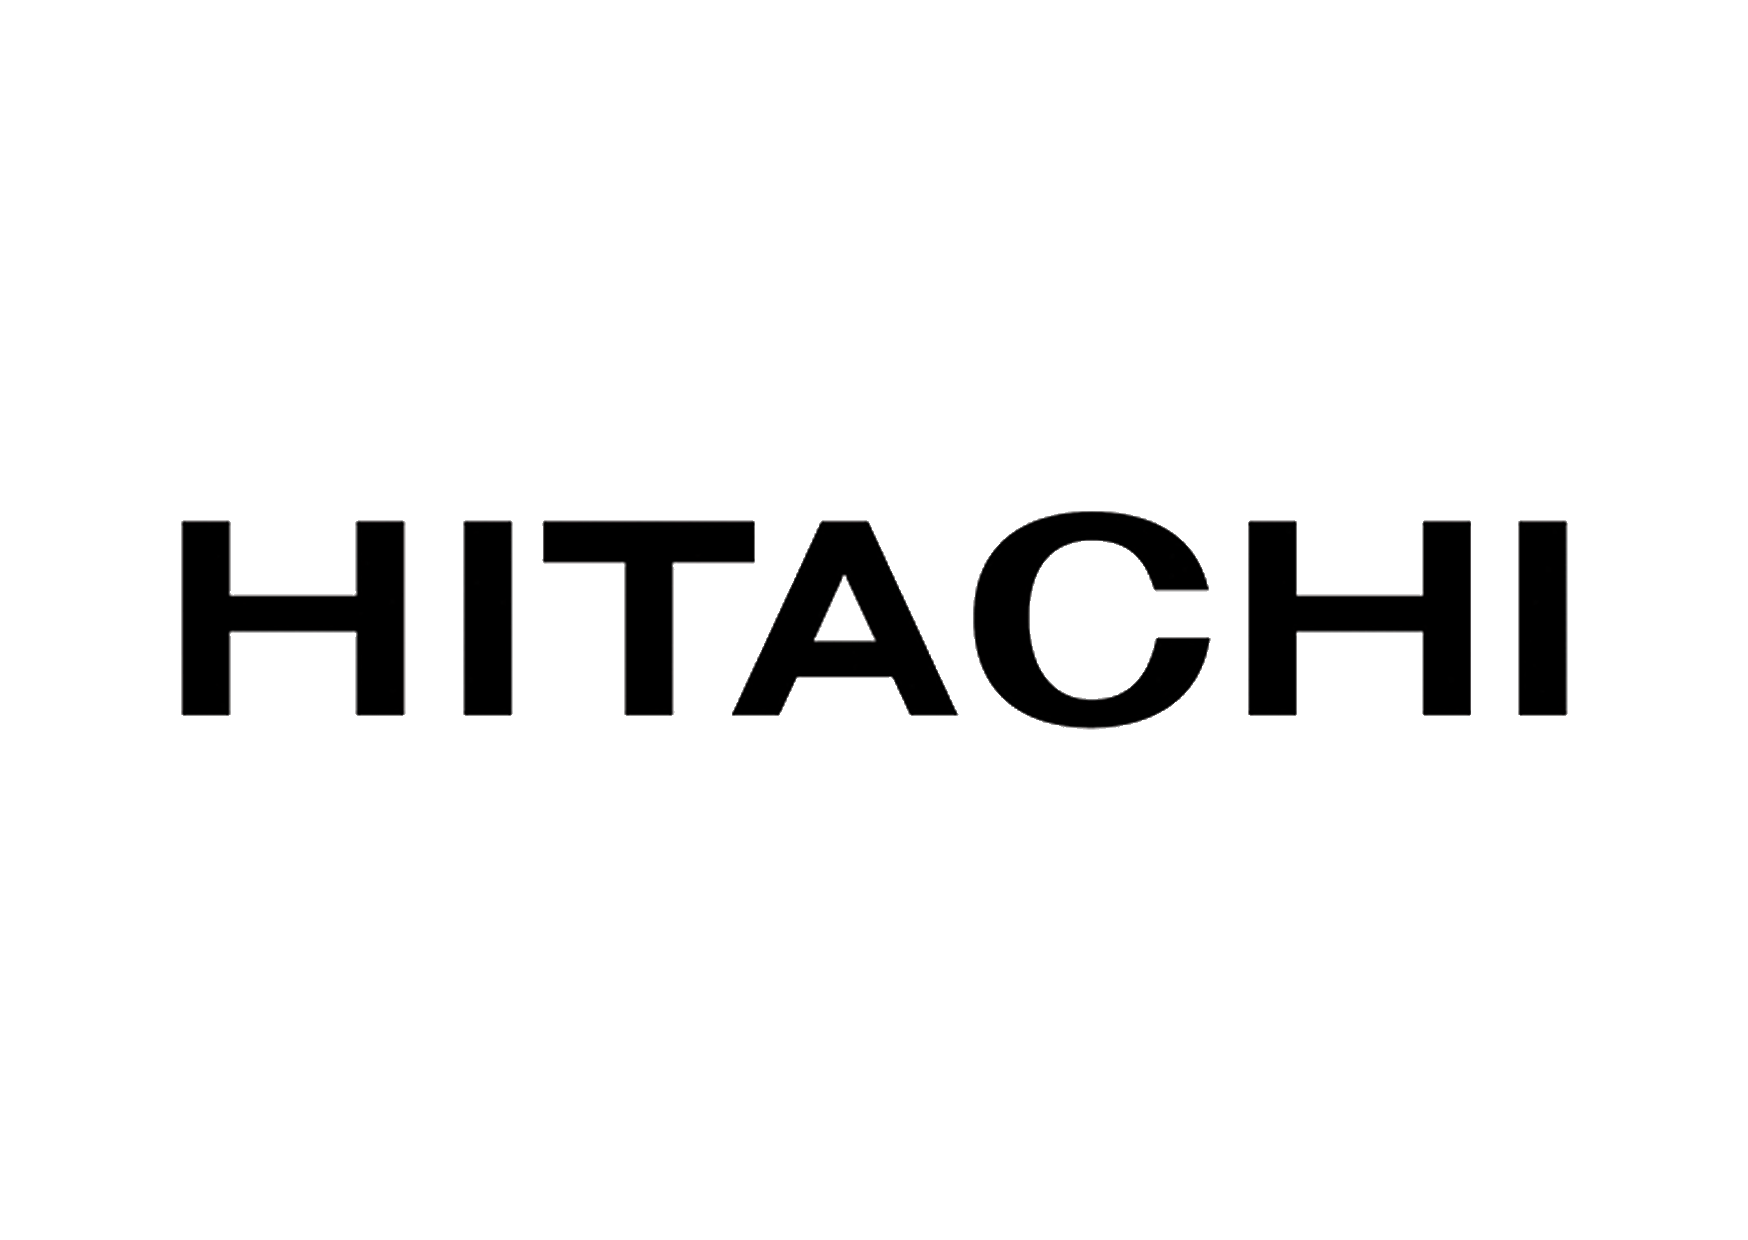 Ремонт телевизоров Hitachi